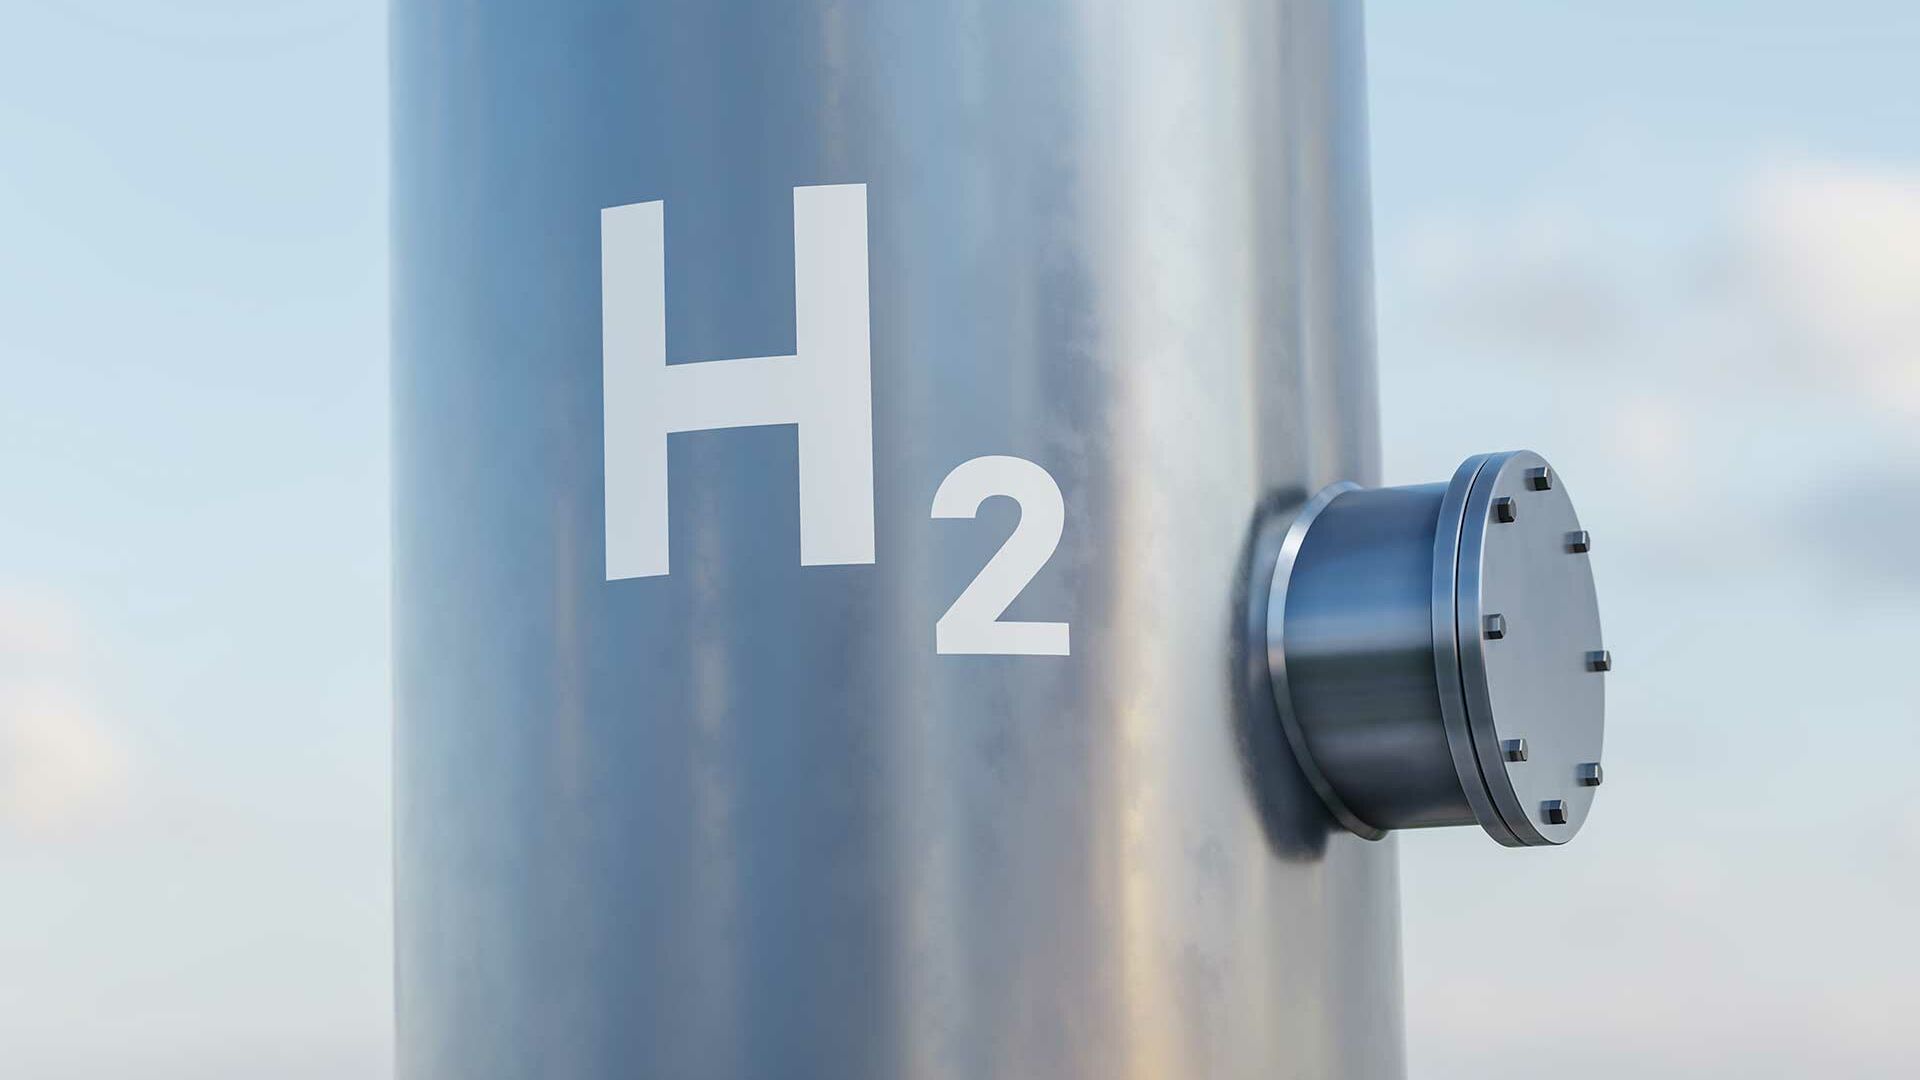 Wasserstoff als Energieträger – moderner Wasserstofftank für erneuerbare Energie